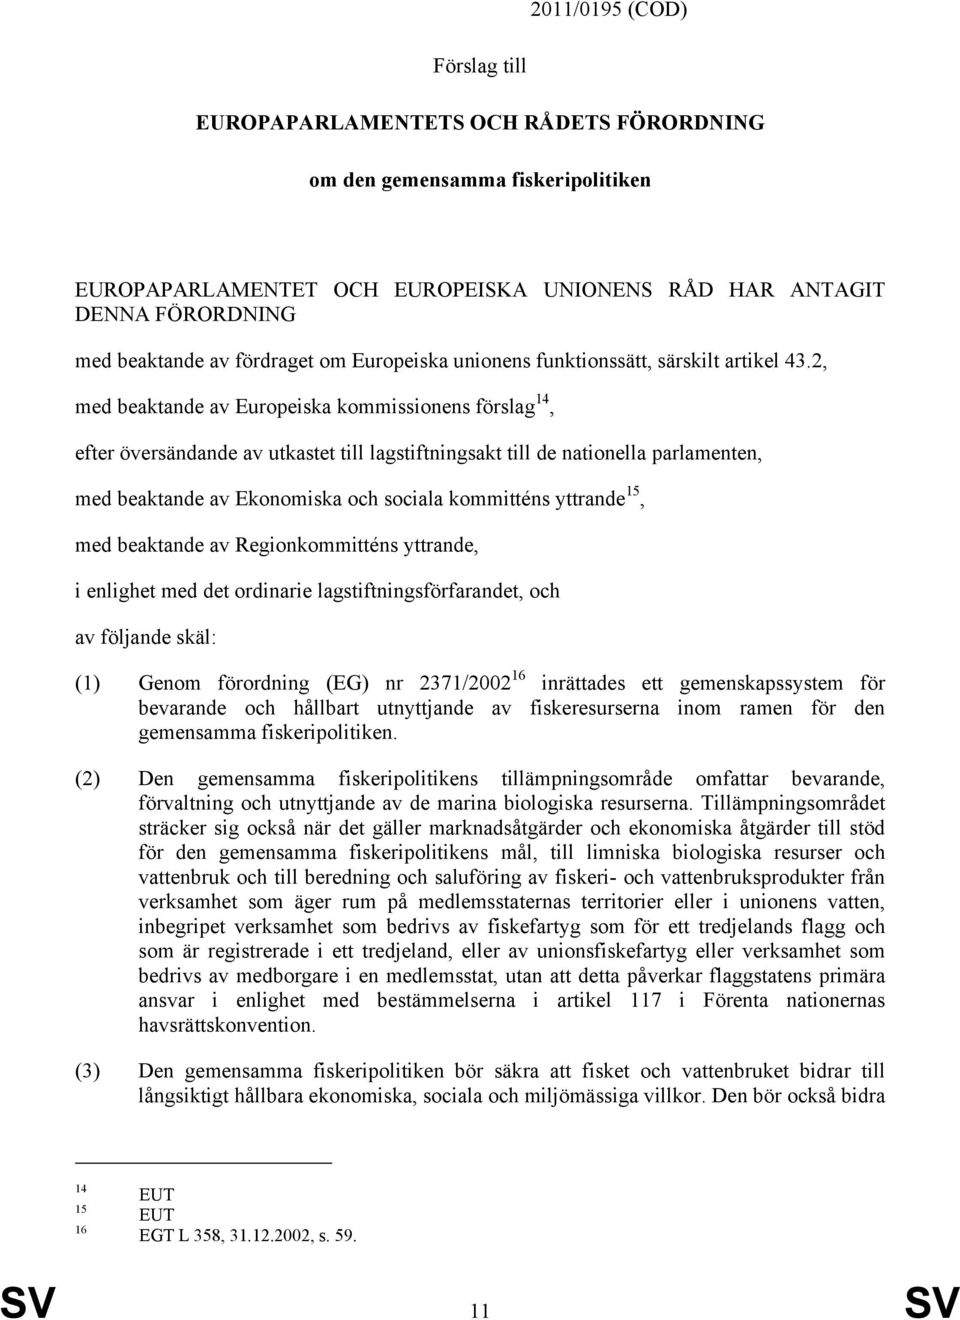 2, med beaktande av Europeiska kommissionens förslag 14, efter översändande av utkastet till lagstiftningsakt till de nationella parlamenten, med beaktande av Ekonomiska och sociala kommitténs